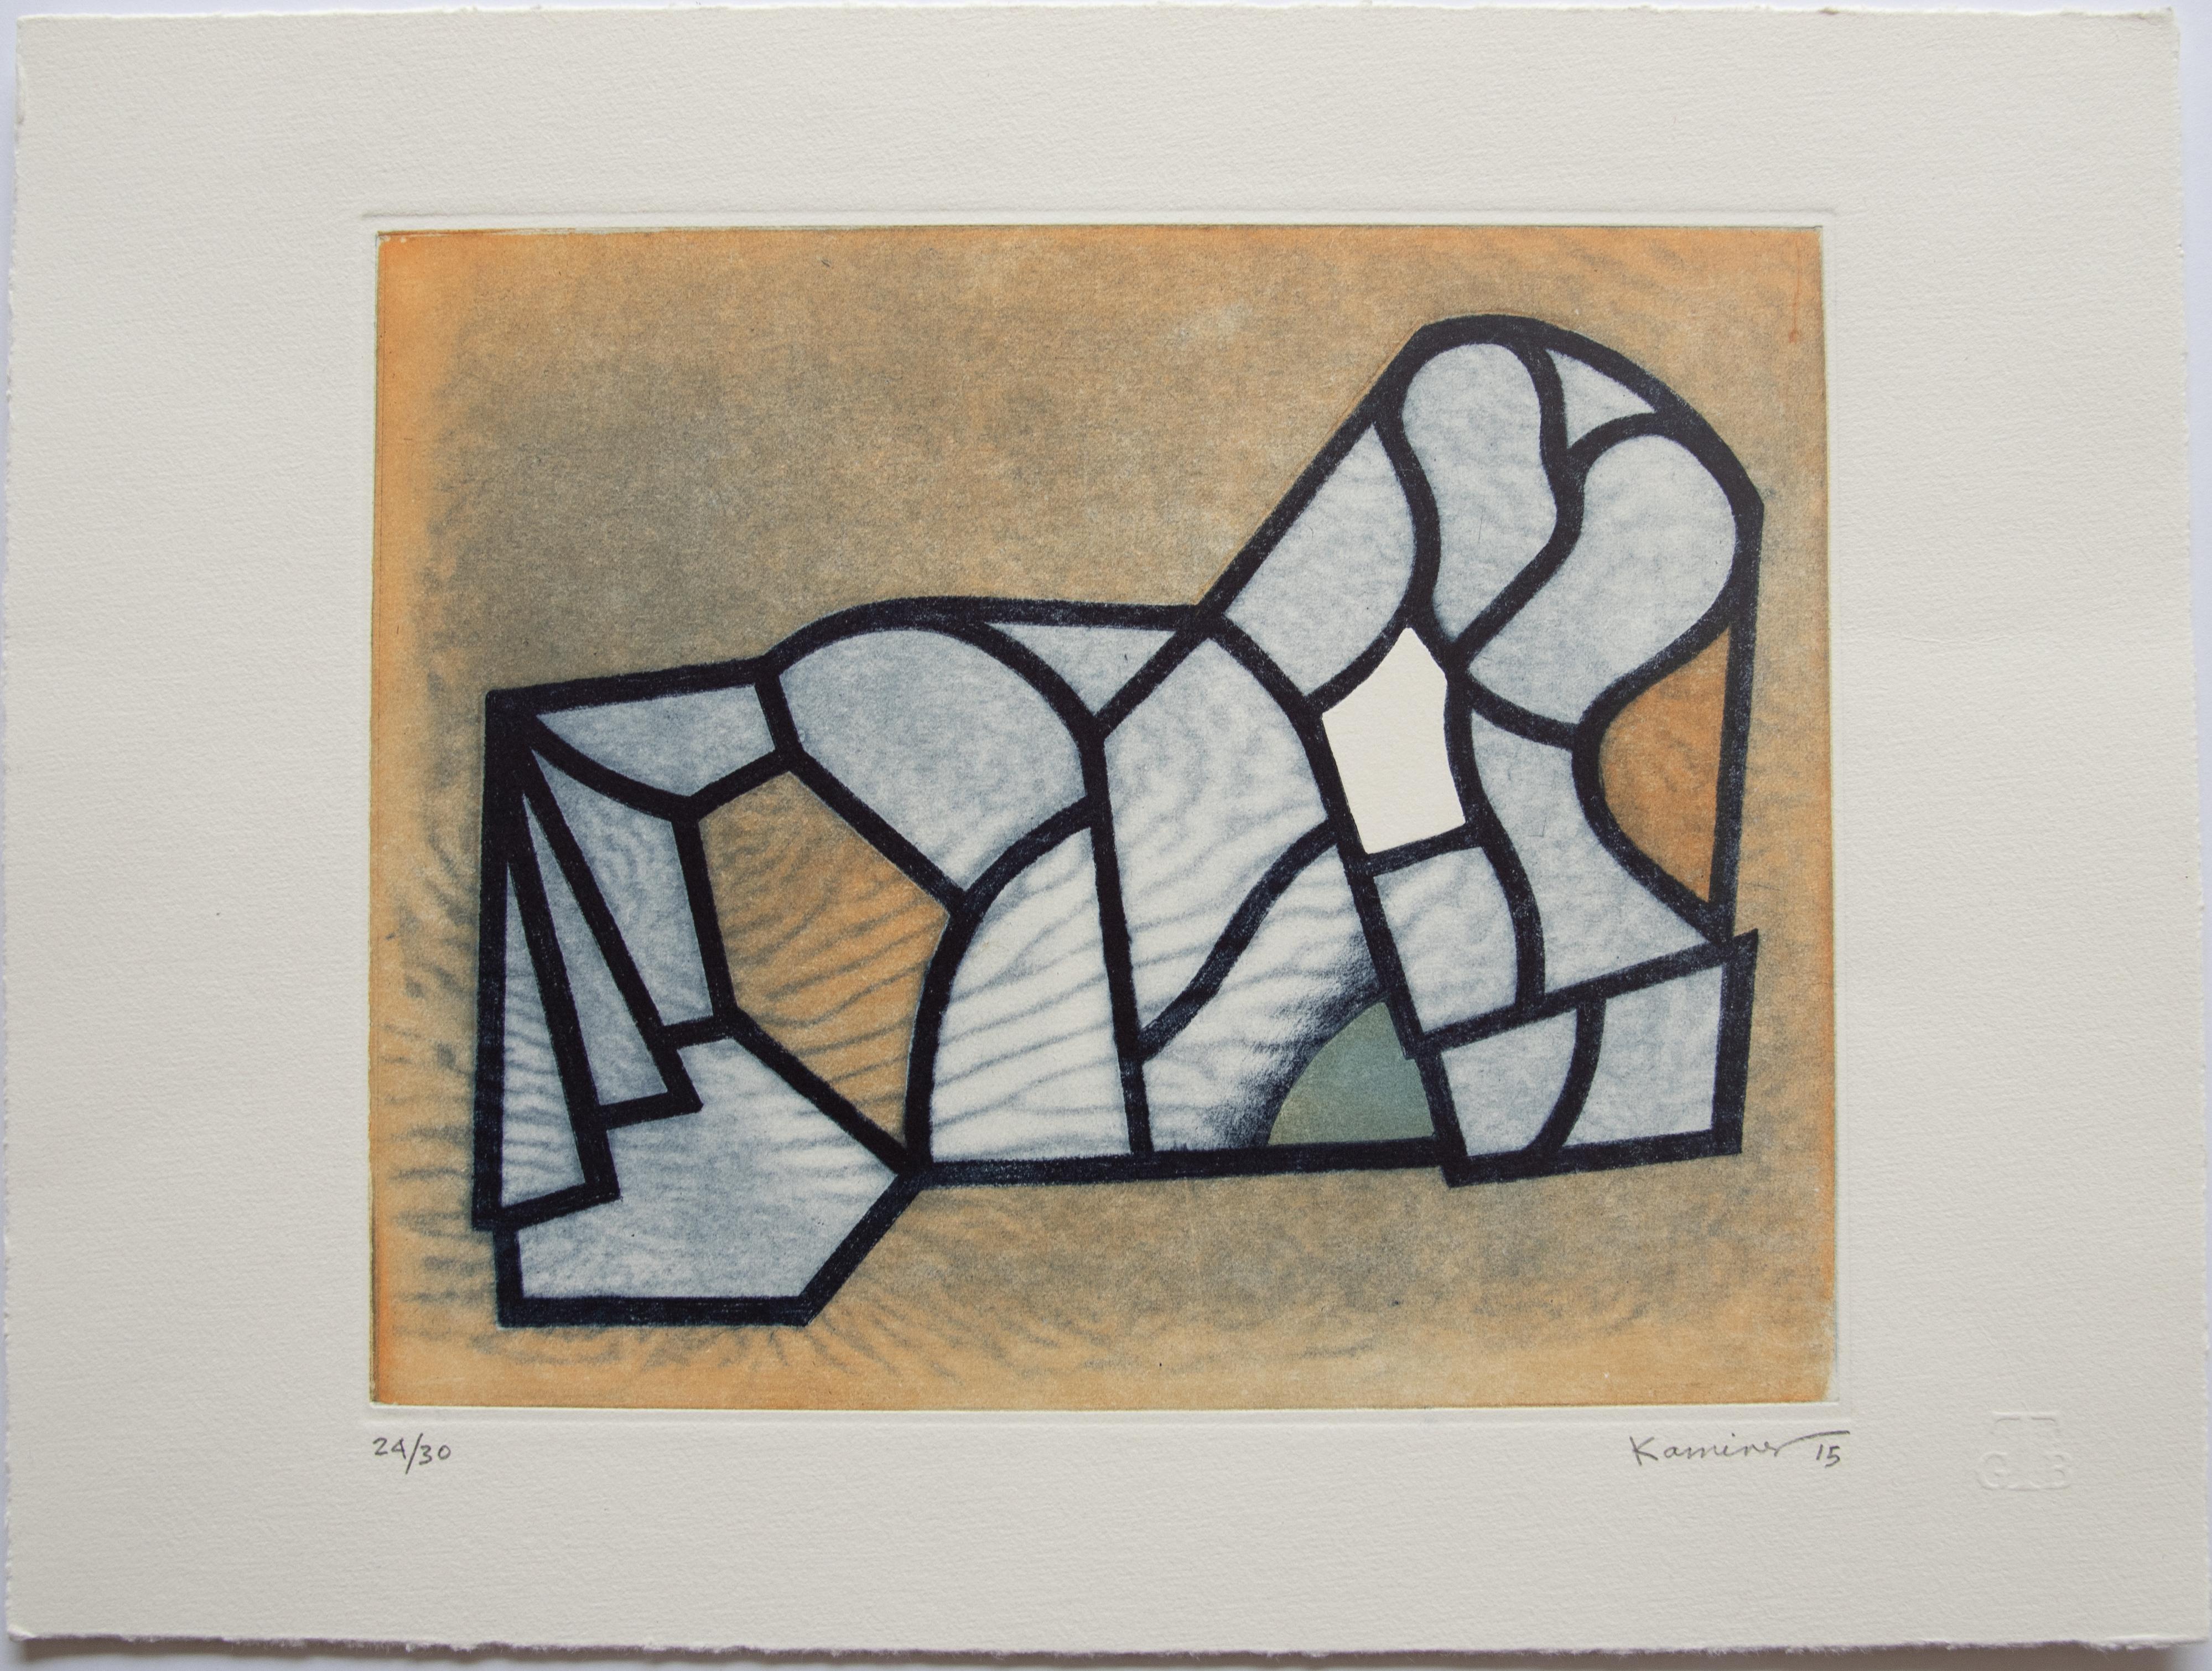 Dieses Werk ist auf Kupferplatte mit 100% Baumwollpapier graviert. 
Radierung, Aquatinta, Kaltnadel. 
Ausgabe 24/ 30

Über den Künstler
Der mexikanische zeitgenössische Maler und Bildhauer Saúl Kaminer (1952) ist vor allem für seine abstrakten